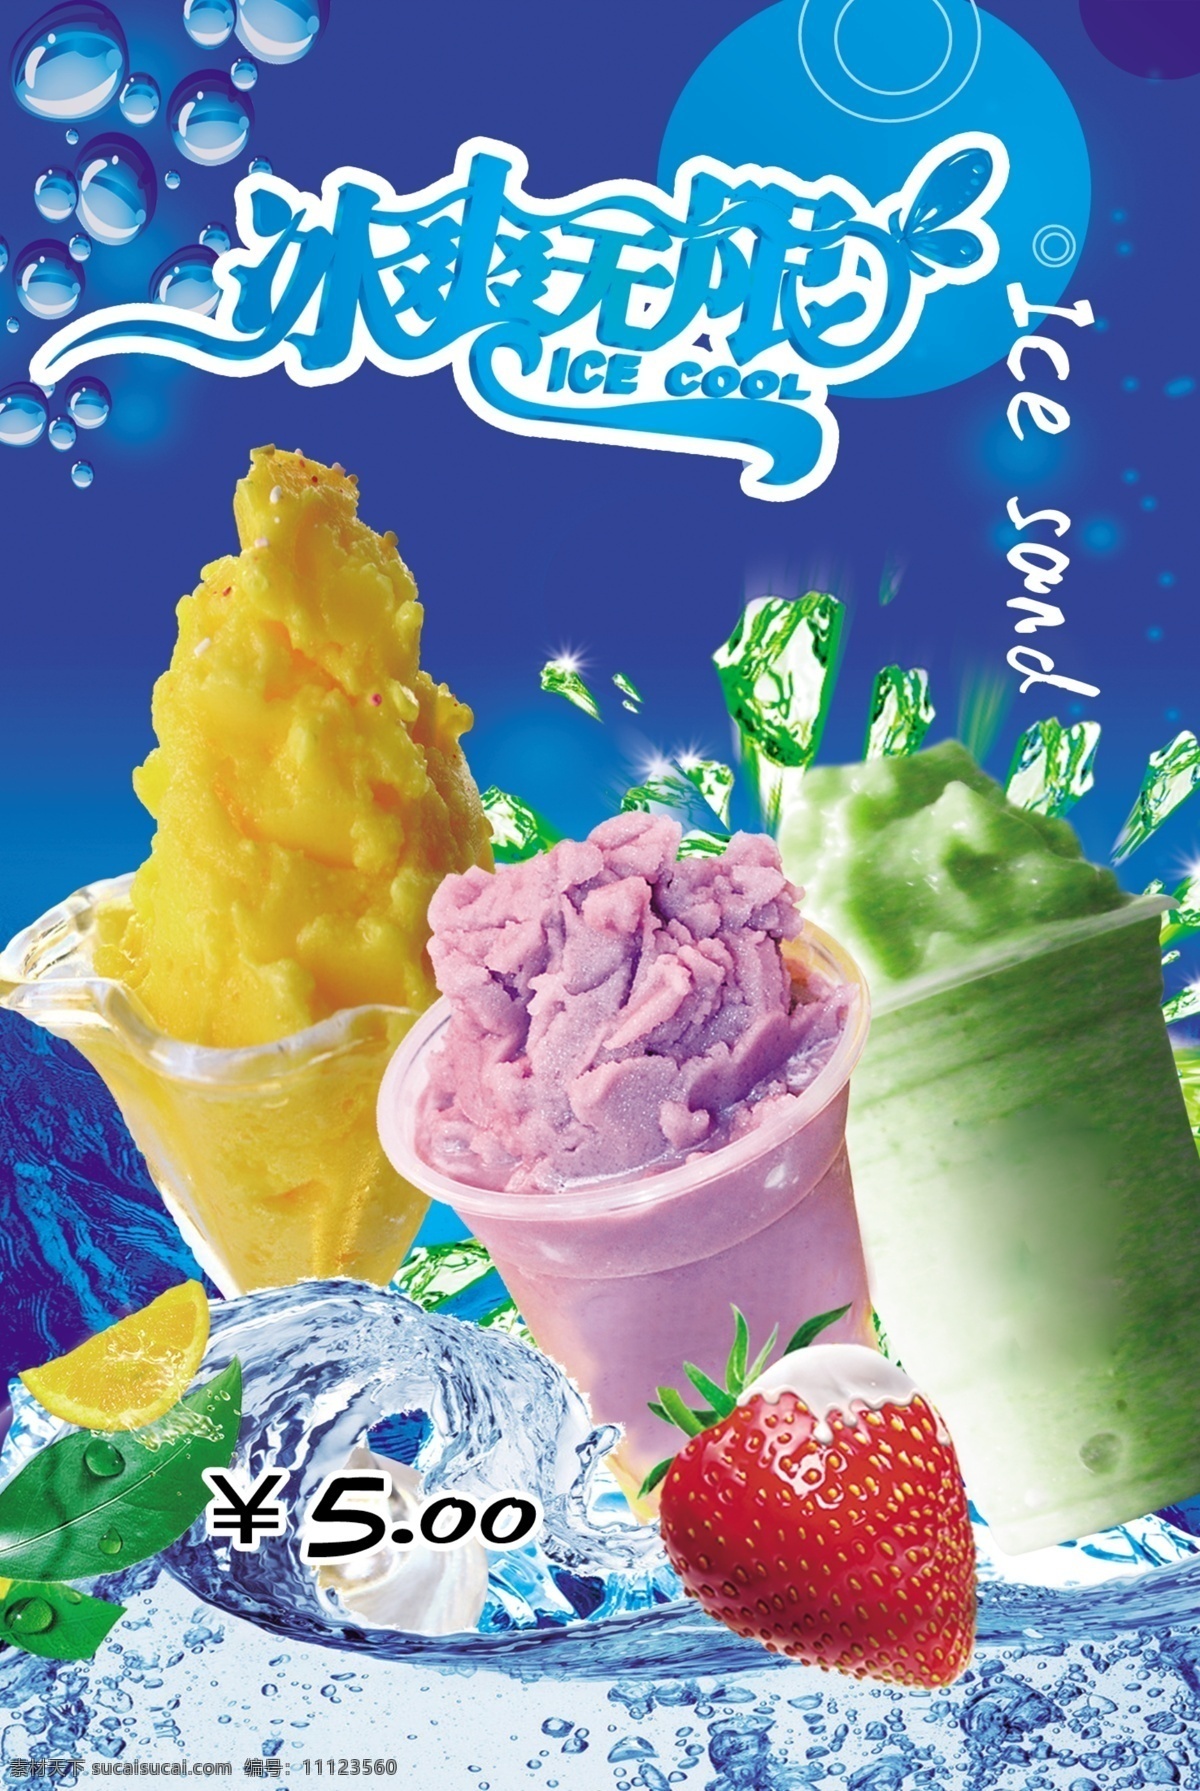 冰沙灯箱图片 冰沙 冰沙素材 冰沙广告 冷饮广告